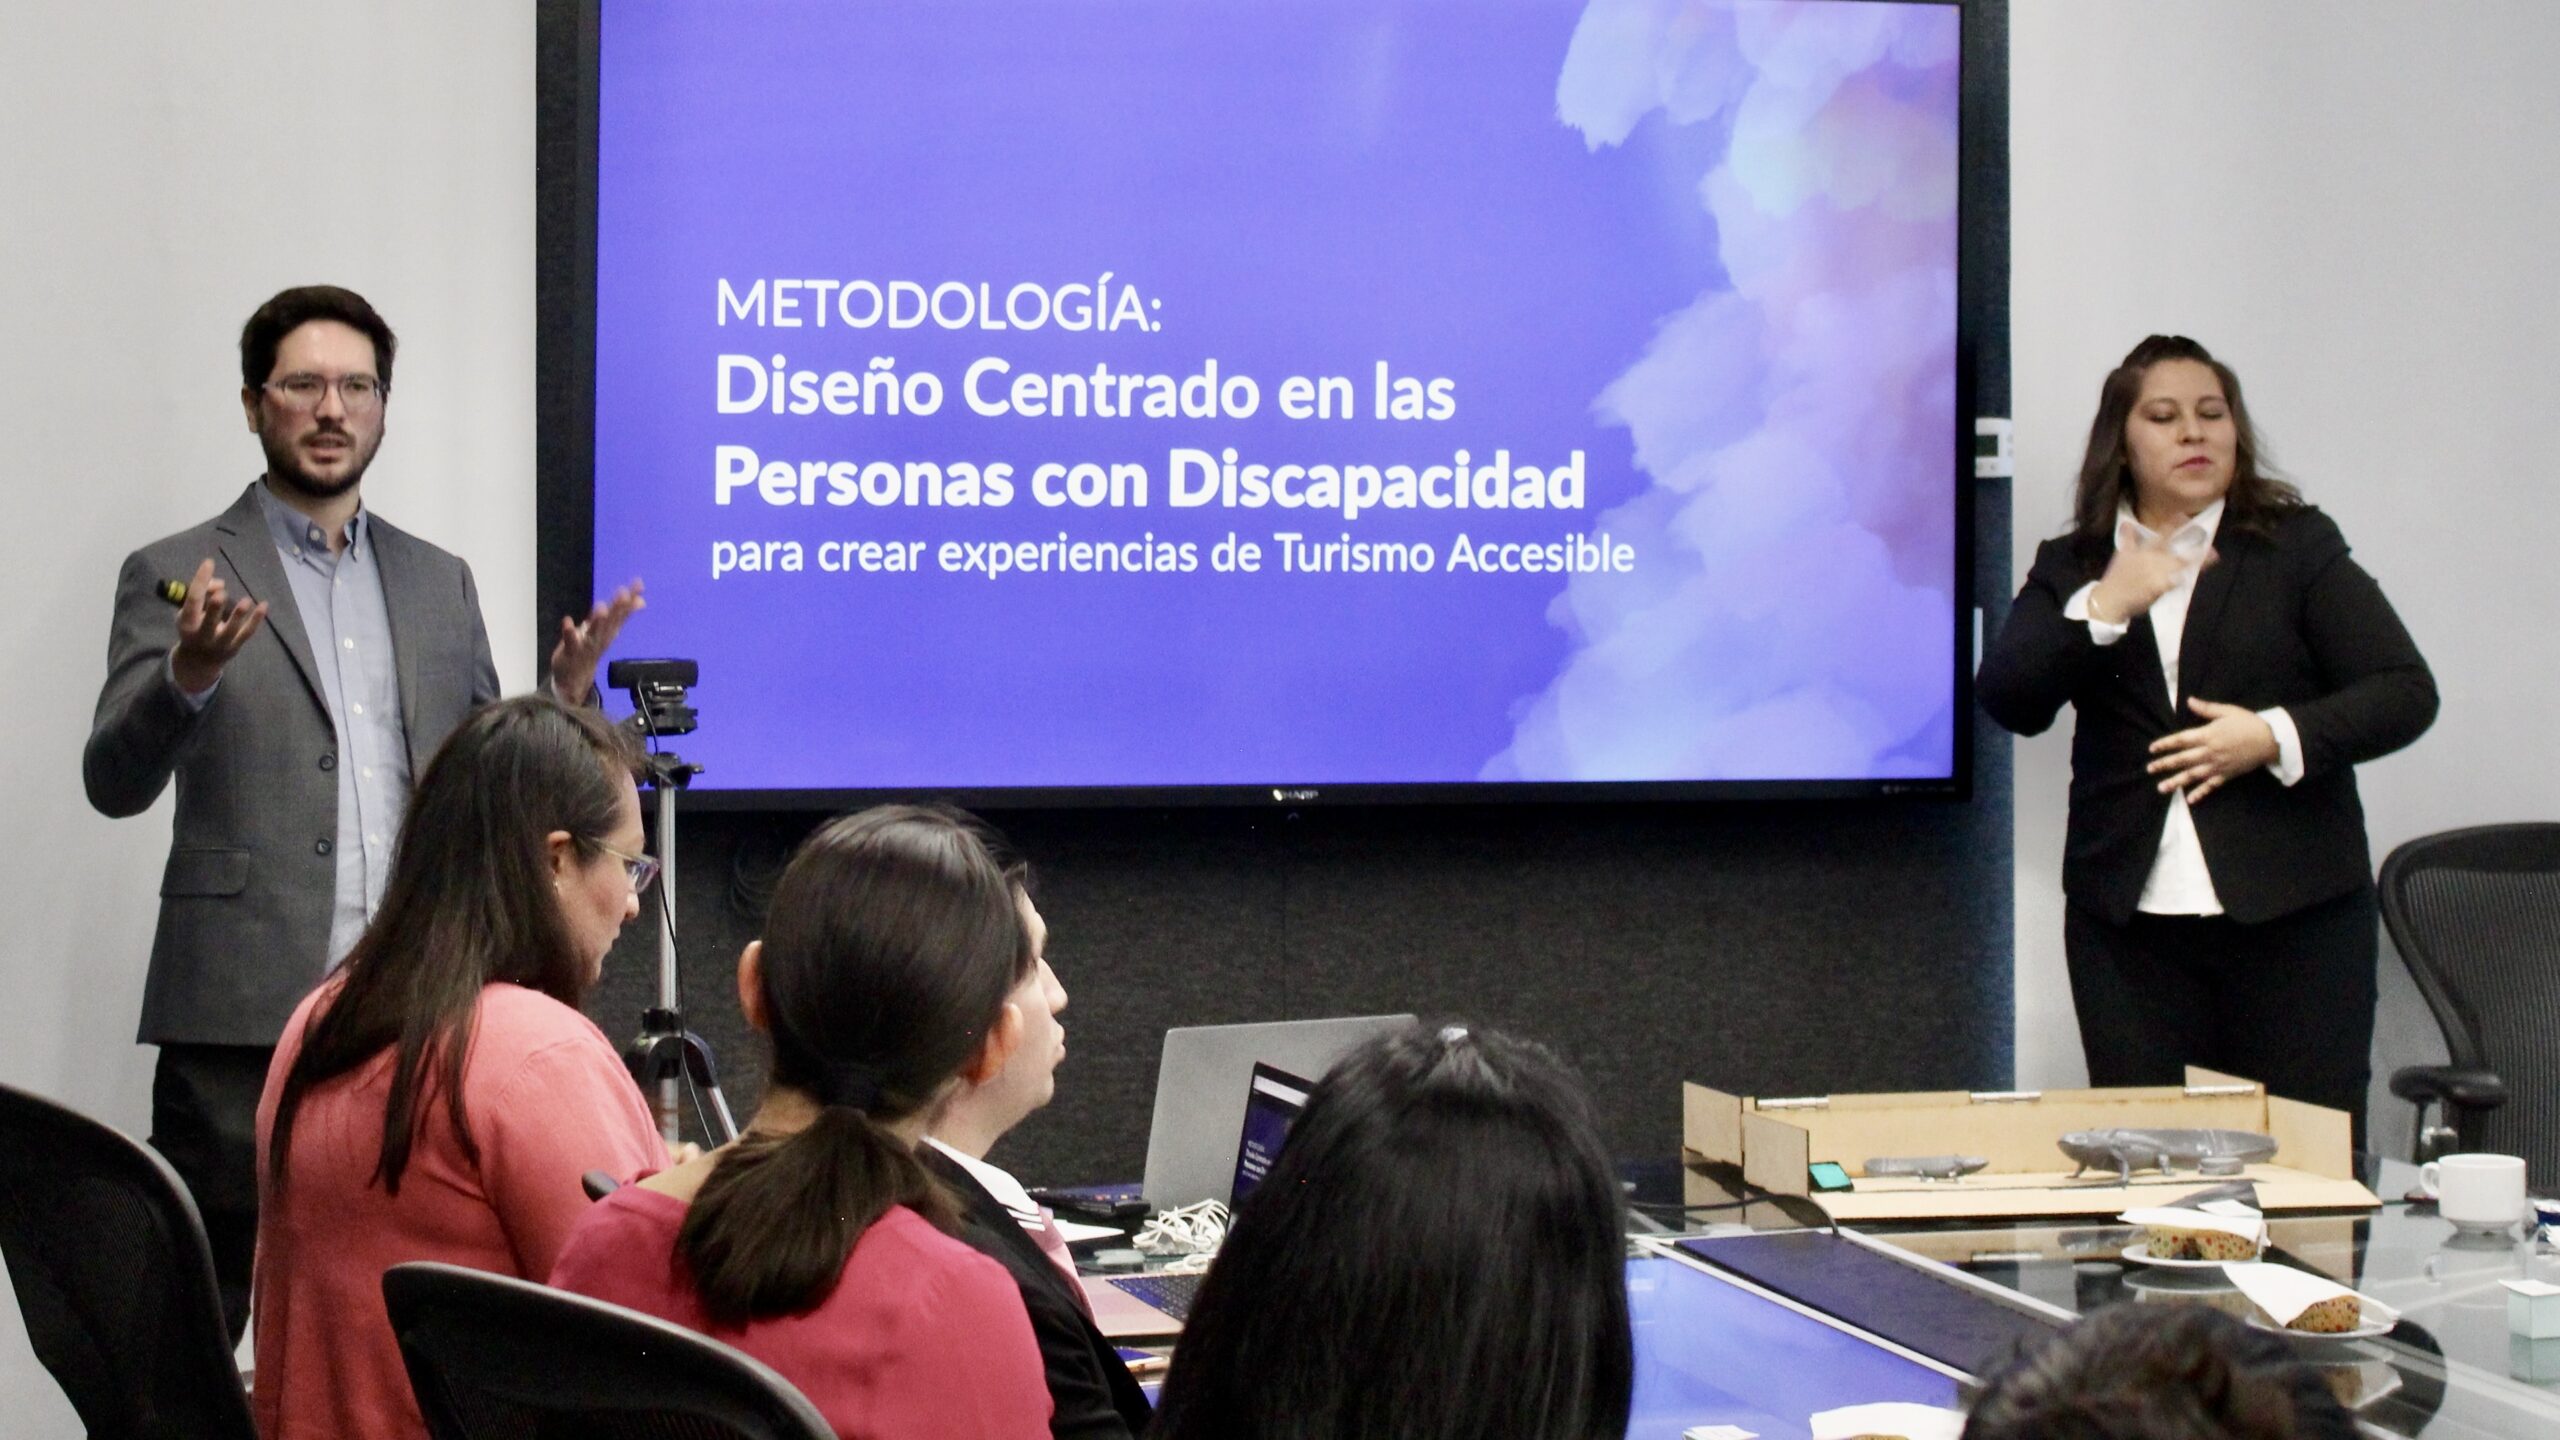 Fotografía de una persona dando una conferencia sobre "diseño centrado en las personas con discapacidad". A su derecha se encuentra una intérprete de lengua de señas mexicana. Se aprecian otras personas de espaldas, sentadas en el público.